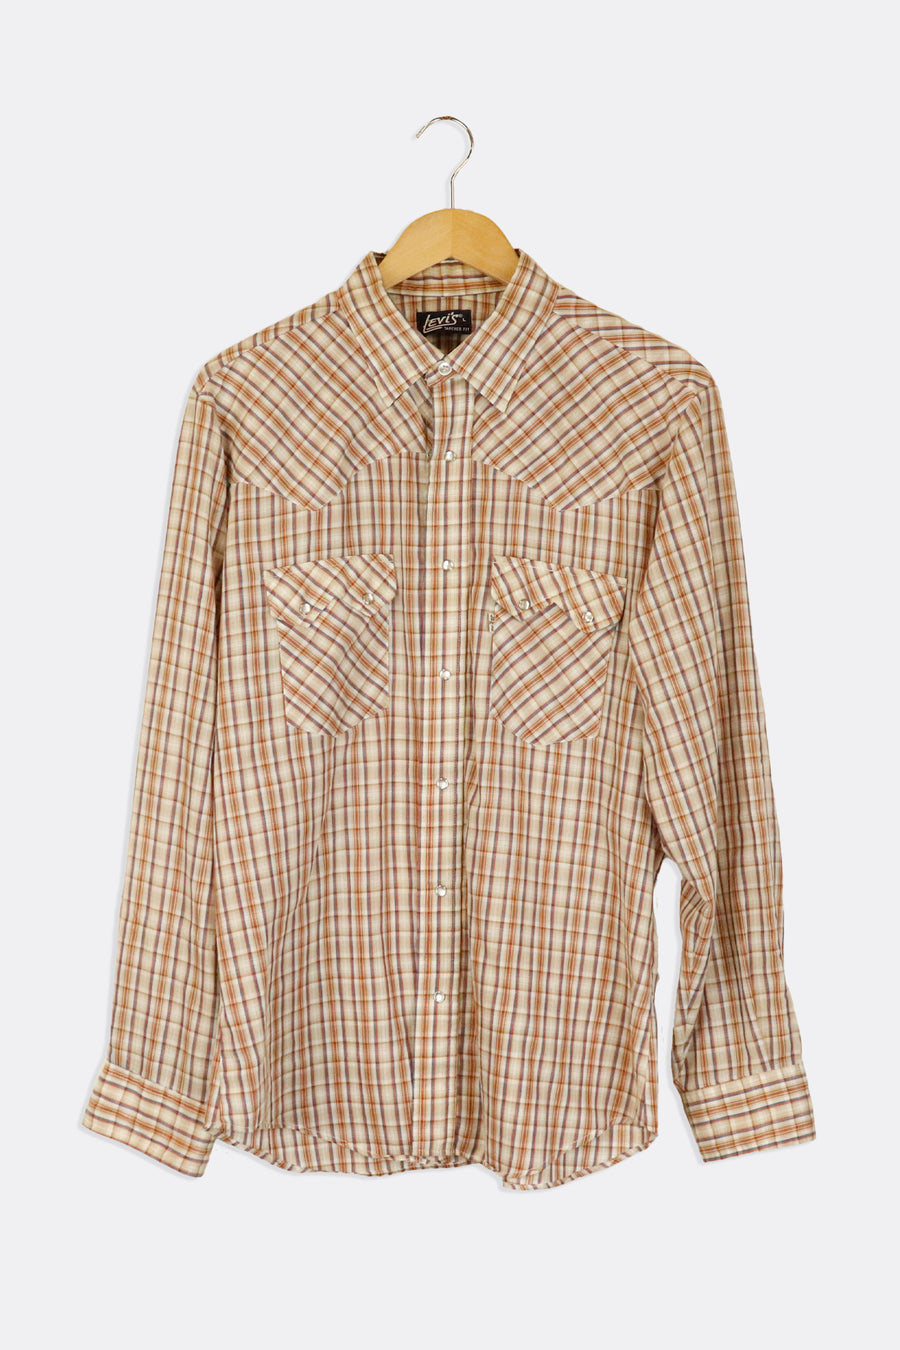 Vintage Levis Plaid Collared Button Up Longsleeve T Shirt Sz L